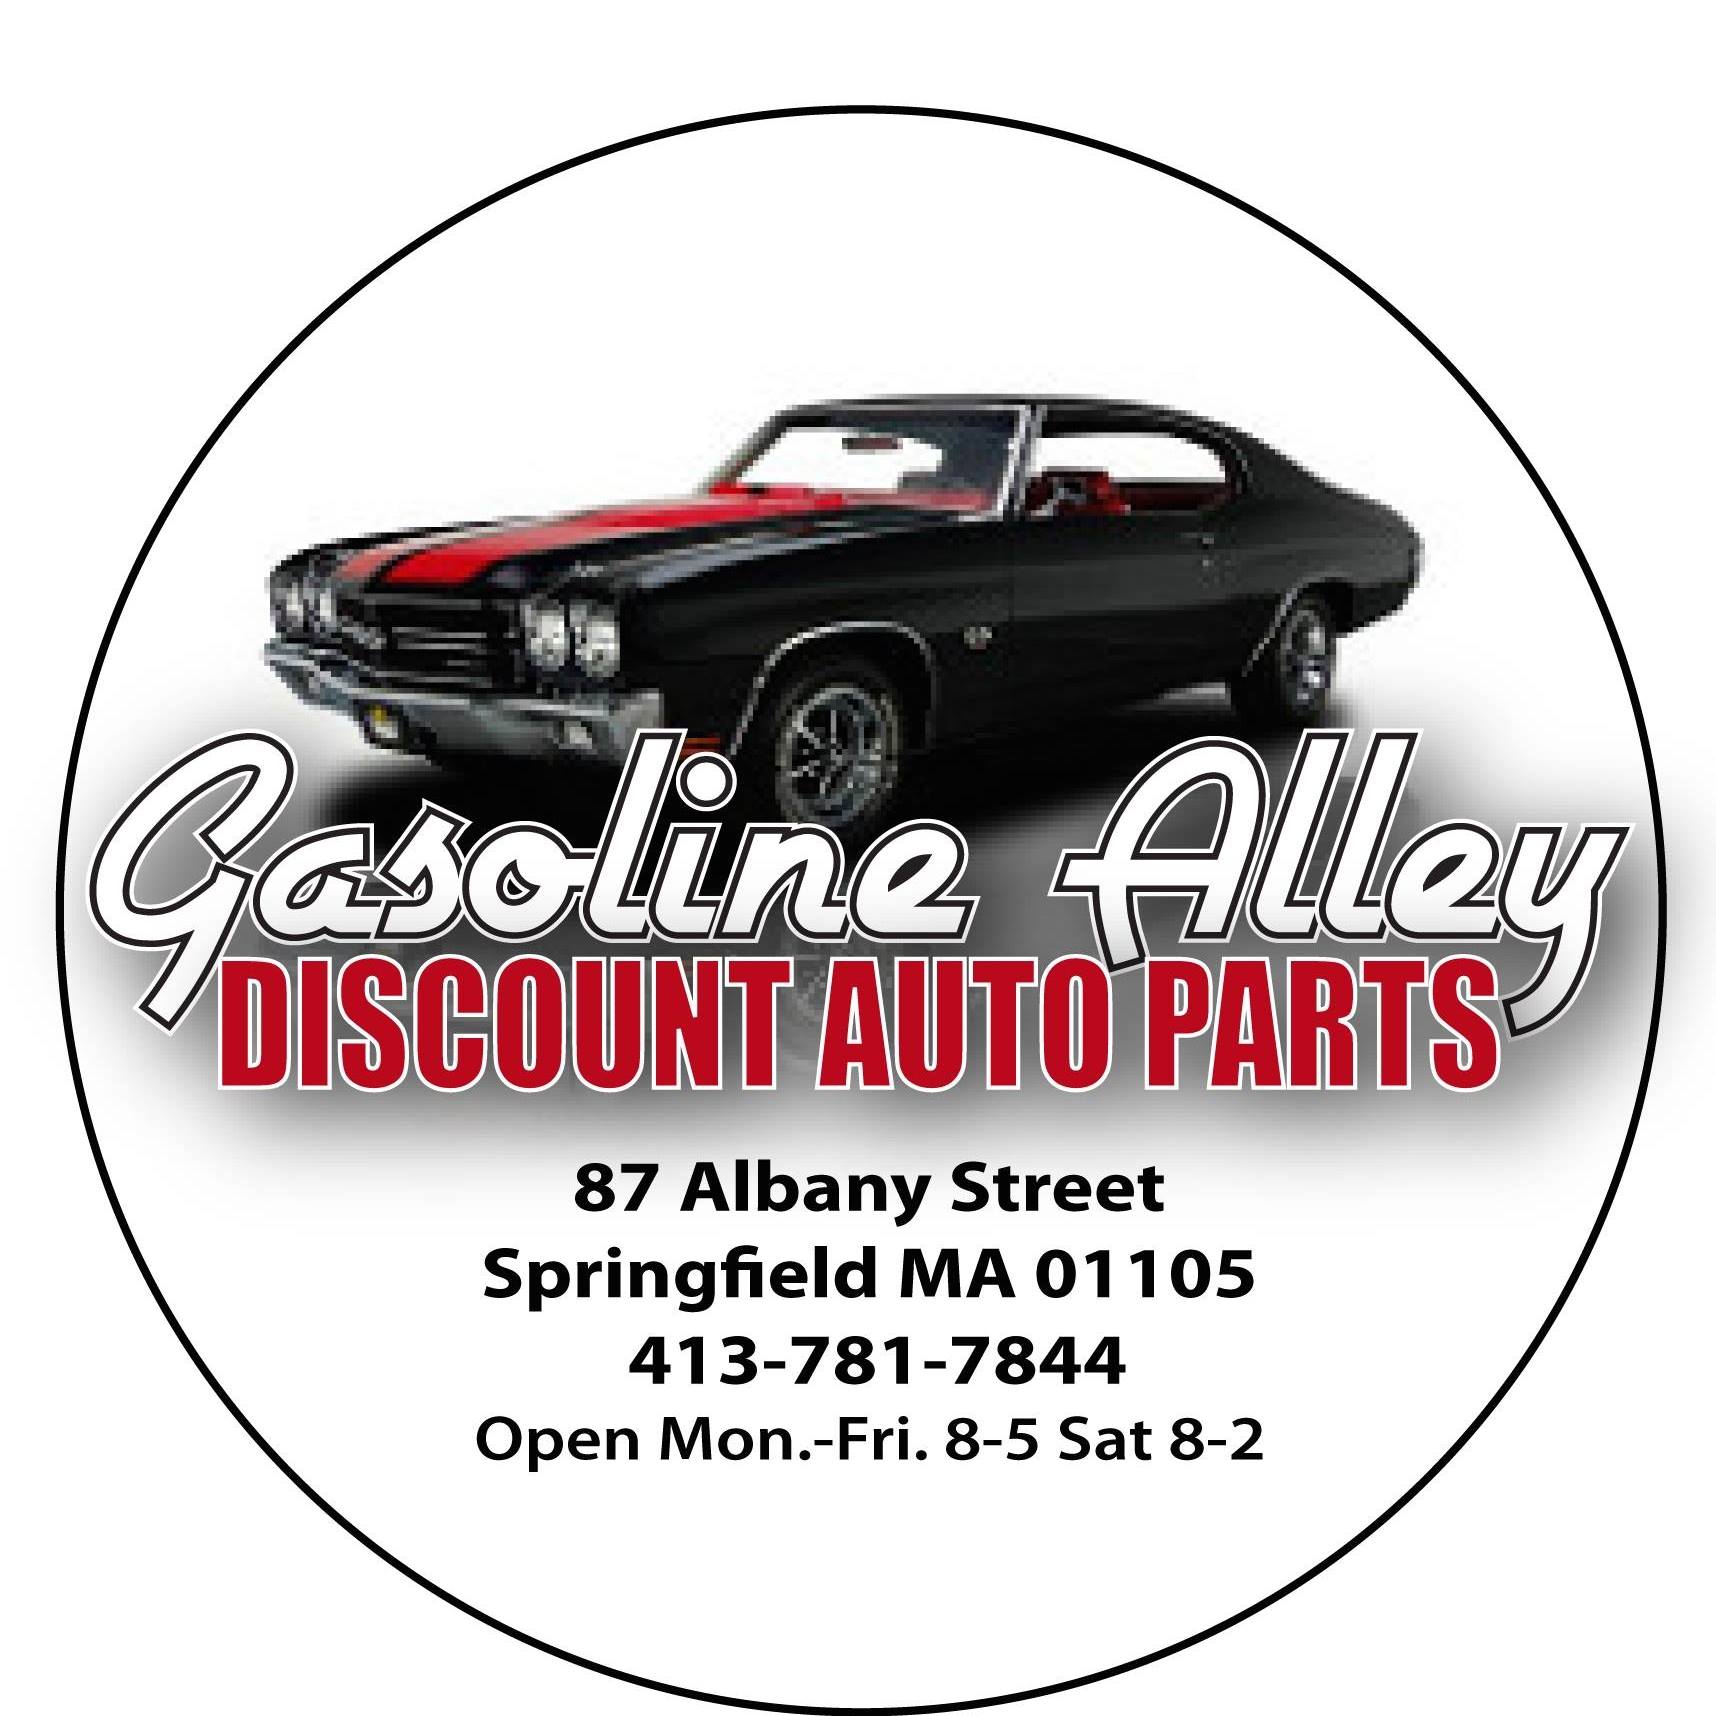 Gasoline Alley Discount Auto Parts